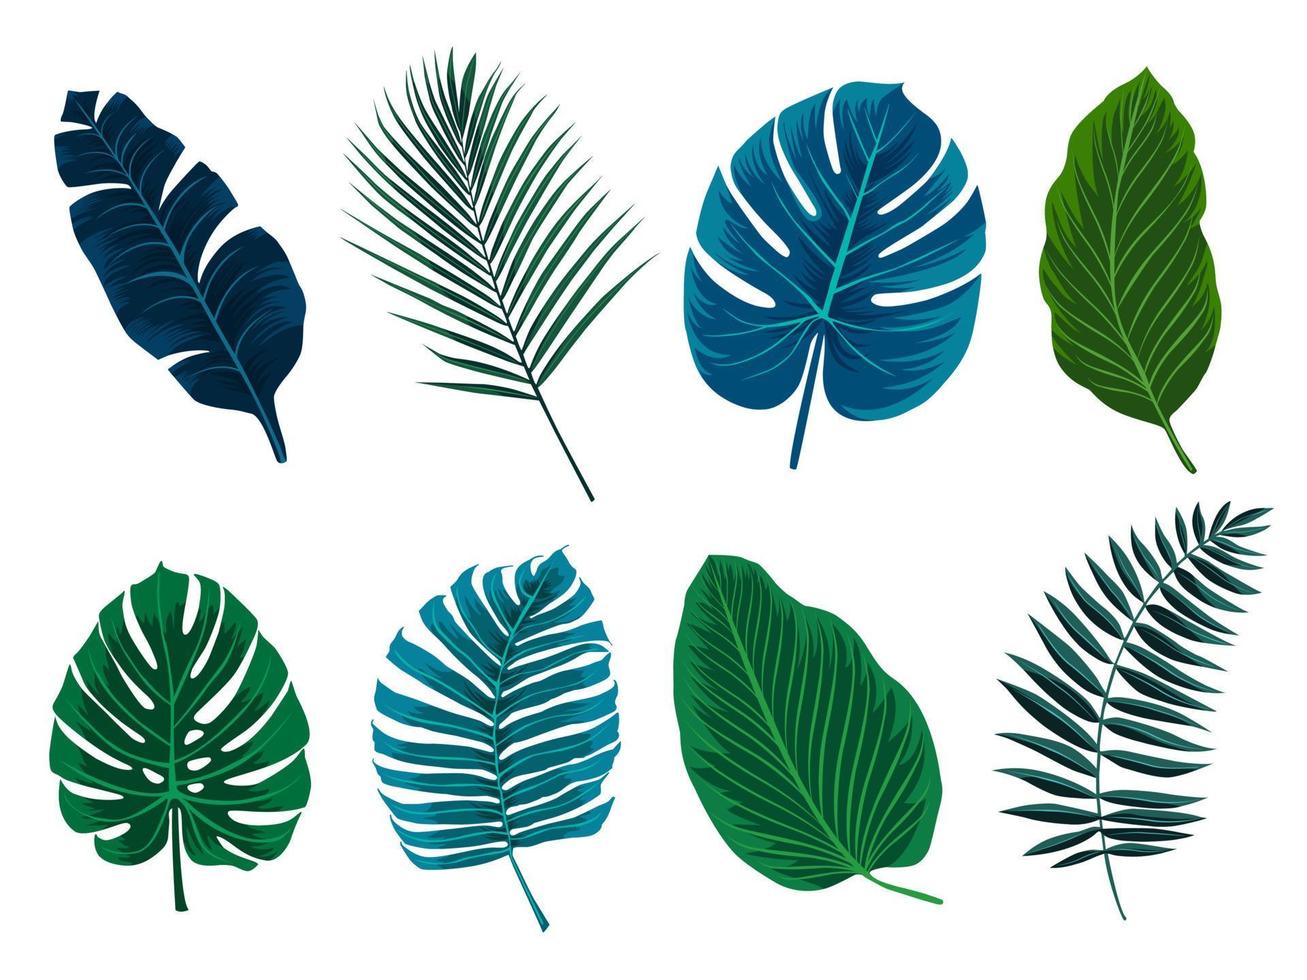 collezione di foglie tropicali esotiche. piante hawaiane ambientate nei colori blu e verde. elementi vettoriali isolati su uno sfondo bianco.